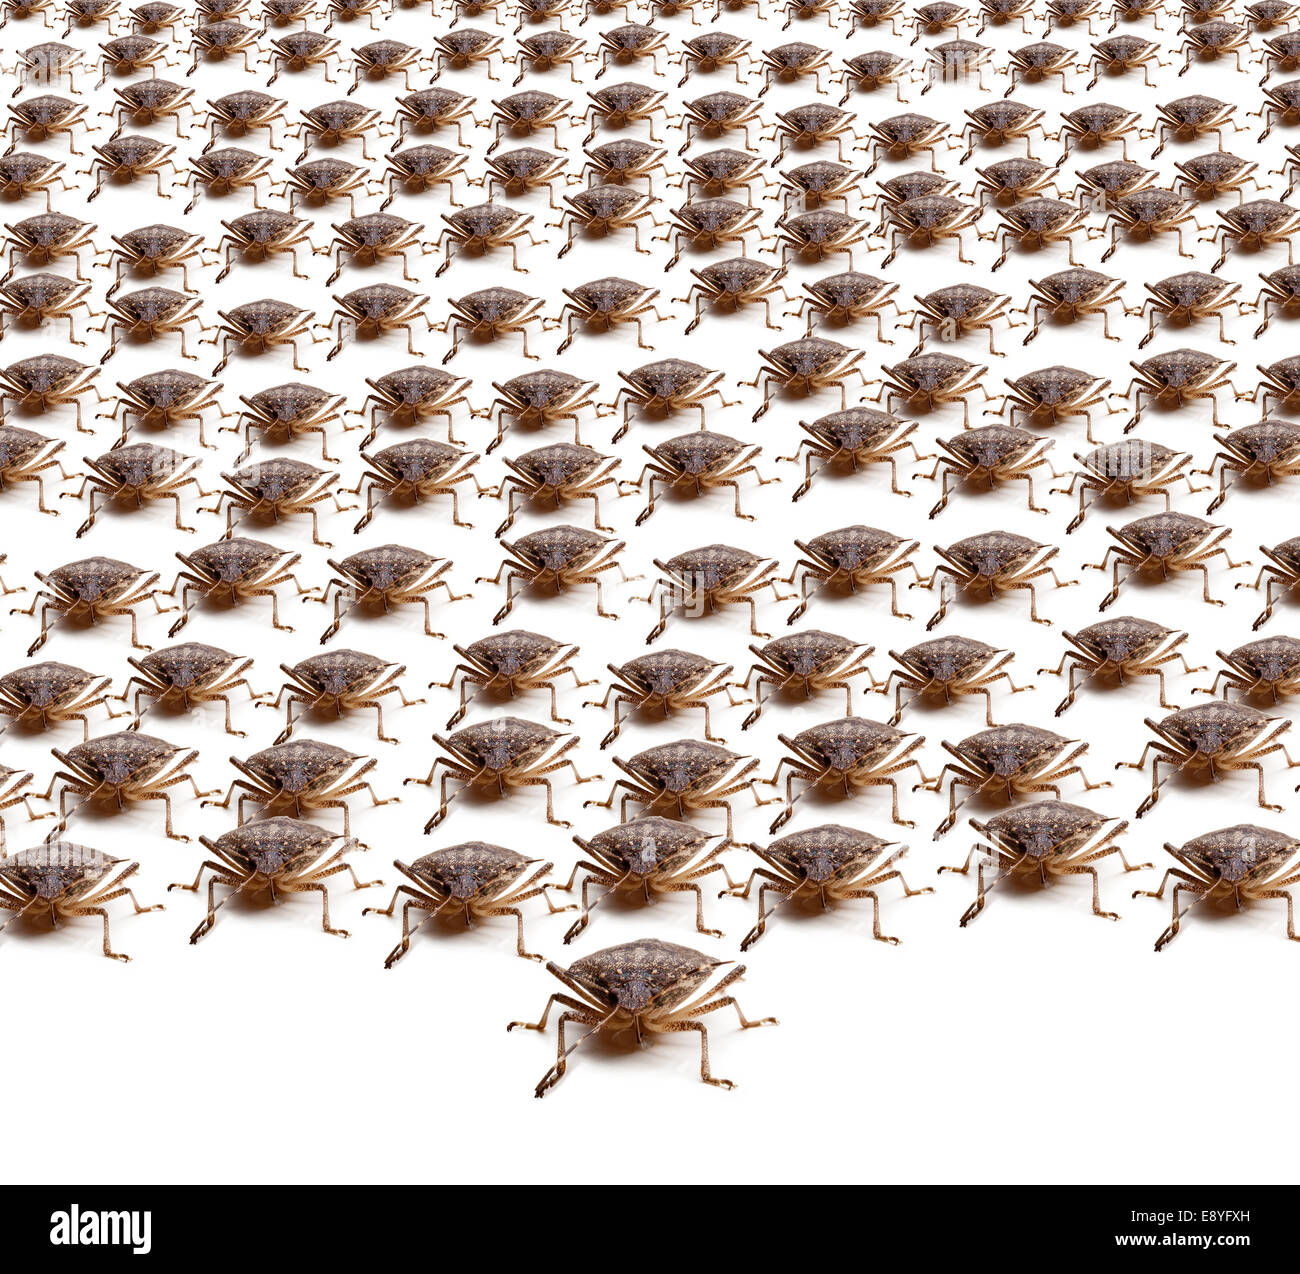 Armée de Brown Stink Bugs Banque D'Images